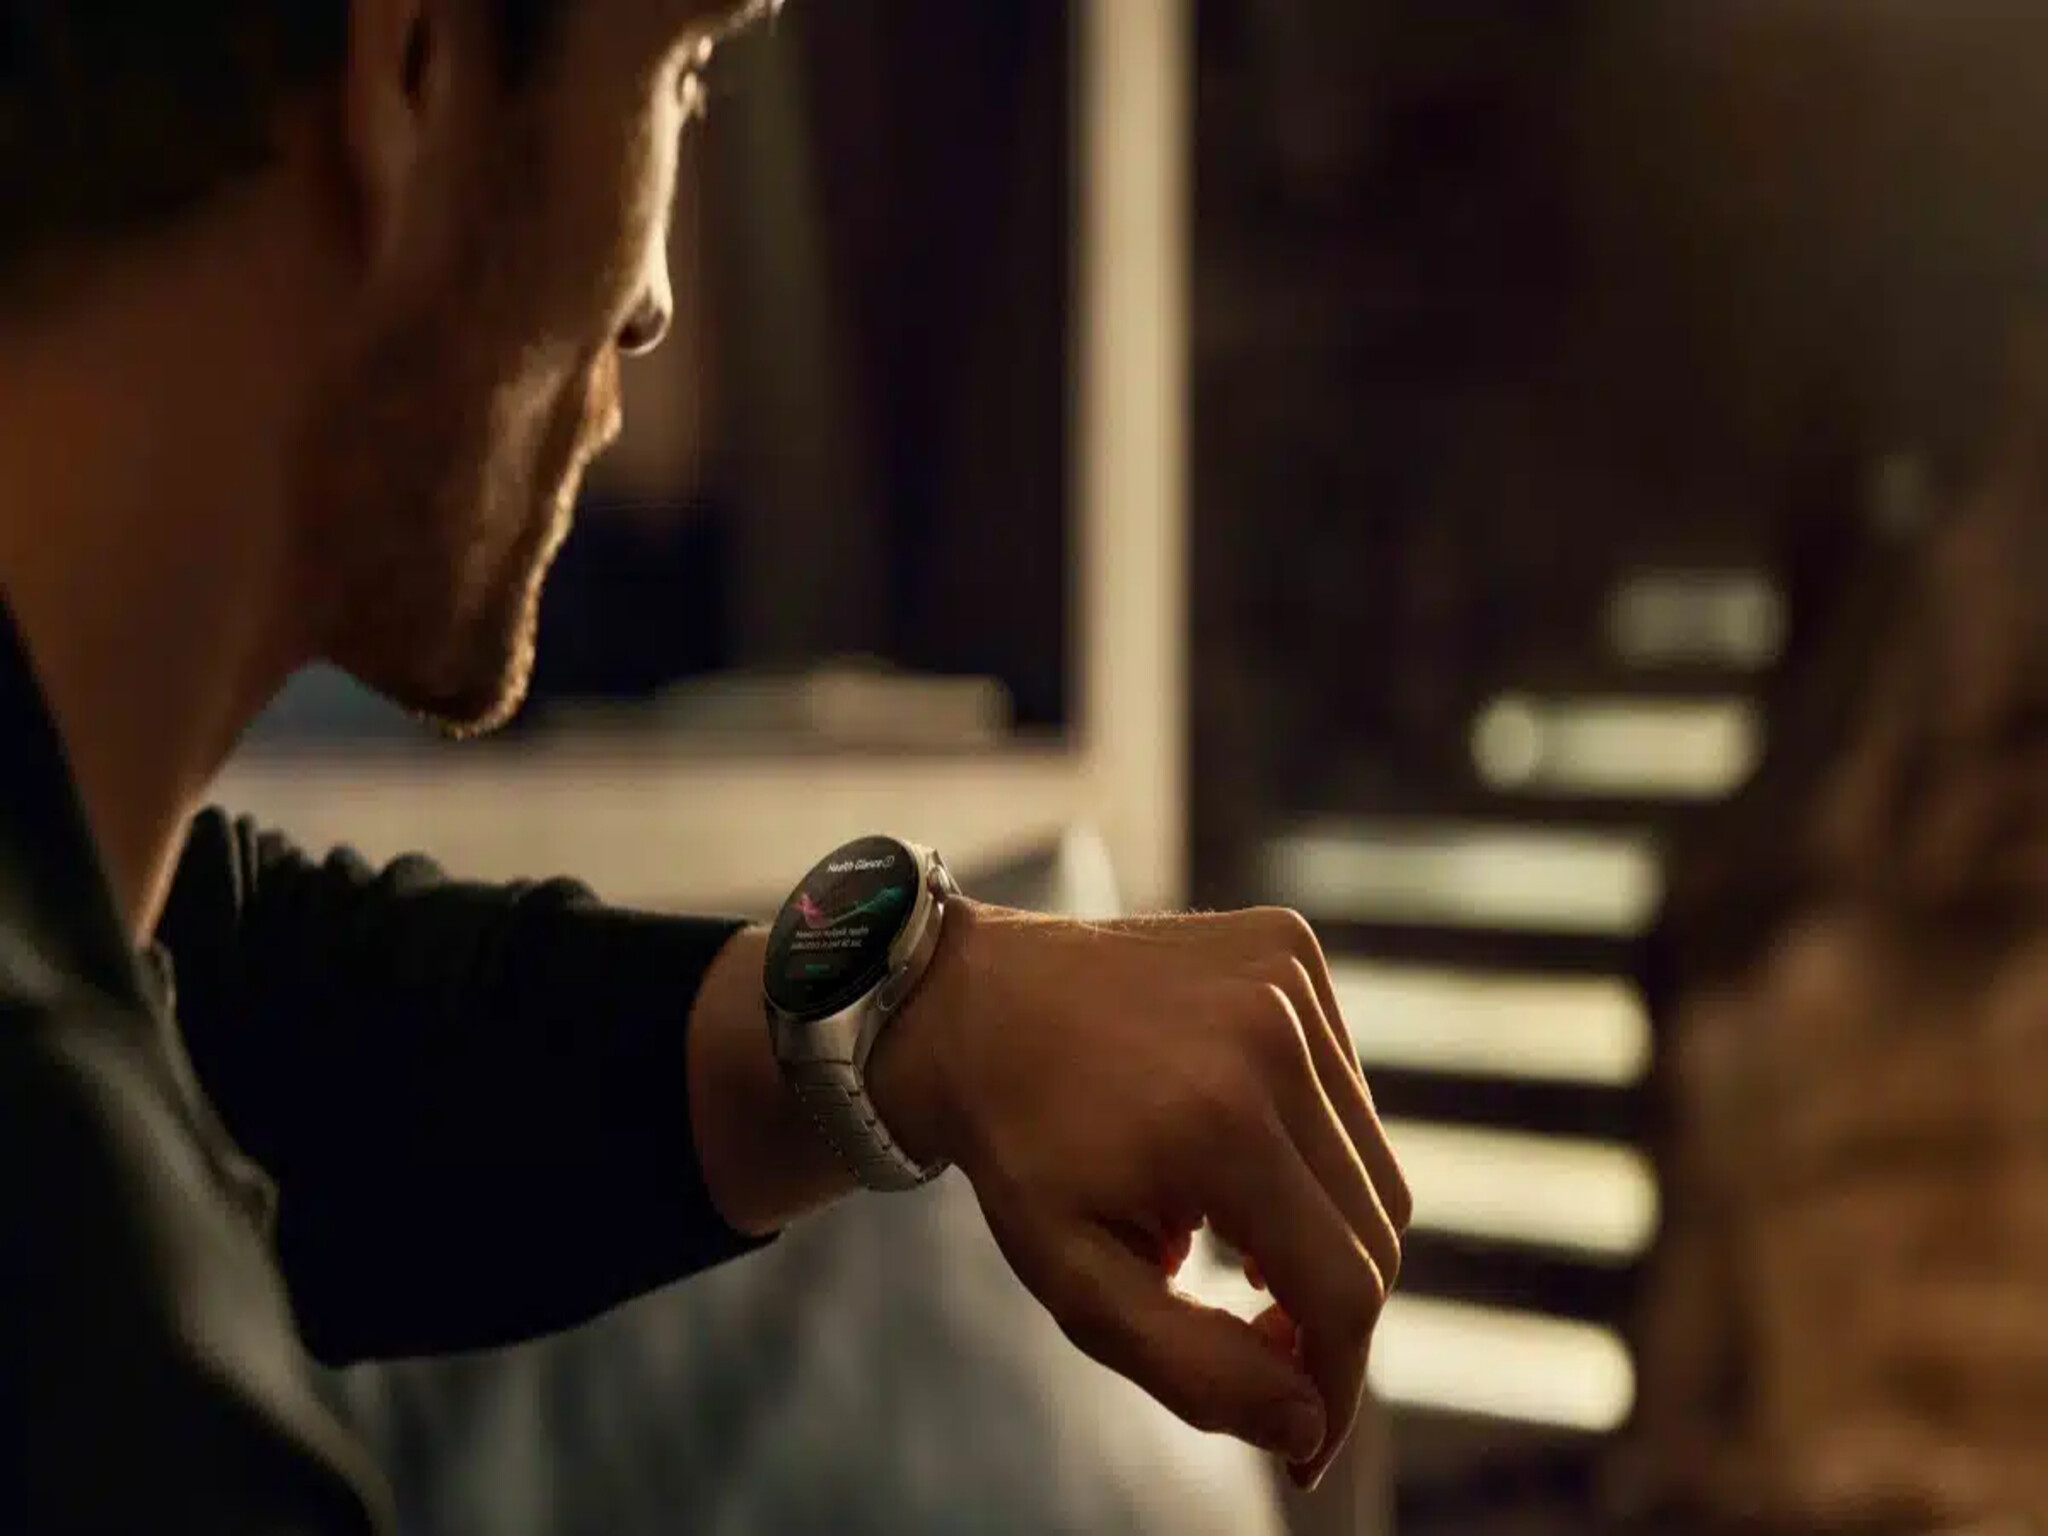 شركة هواوي تعلن عن إطلاق ساعتها الذكية الجديدة "Huawei Watch 4"